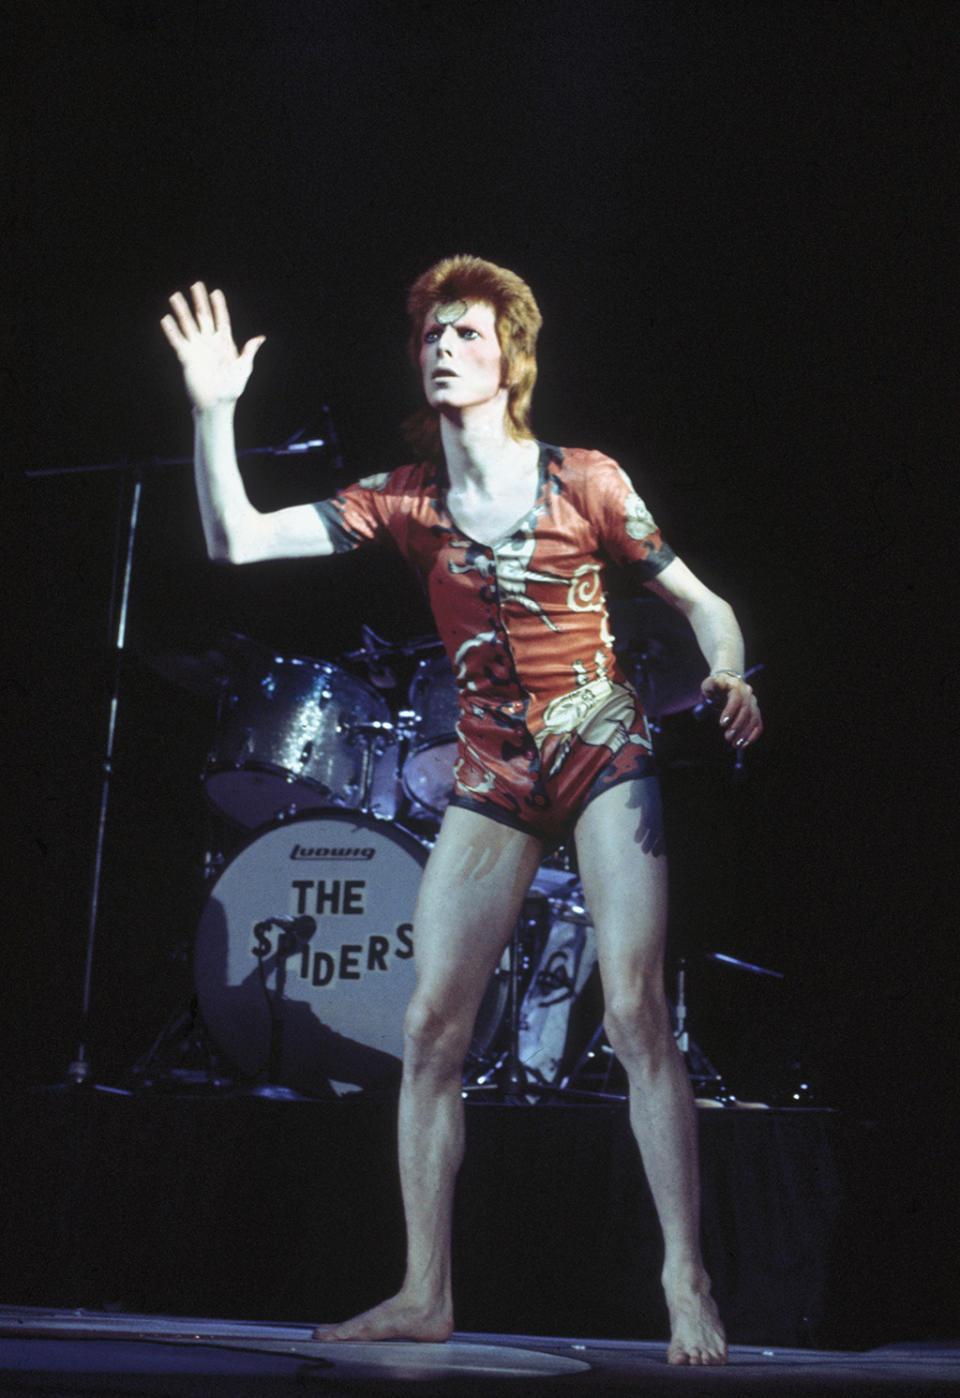 David Bowie dans le rôle de Ziggy Stardust en costume de scène Kansai Yamamoto